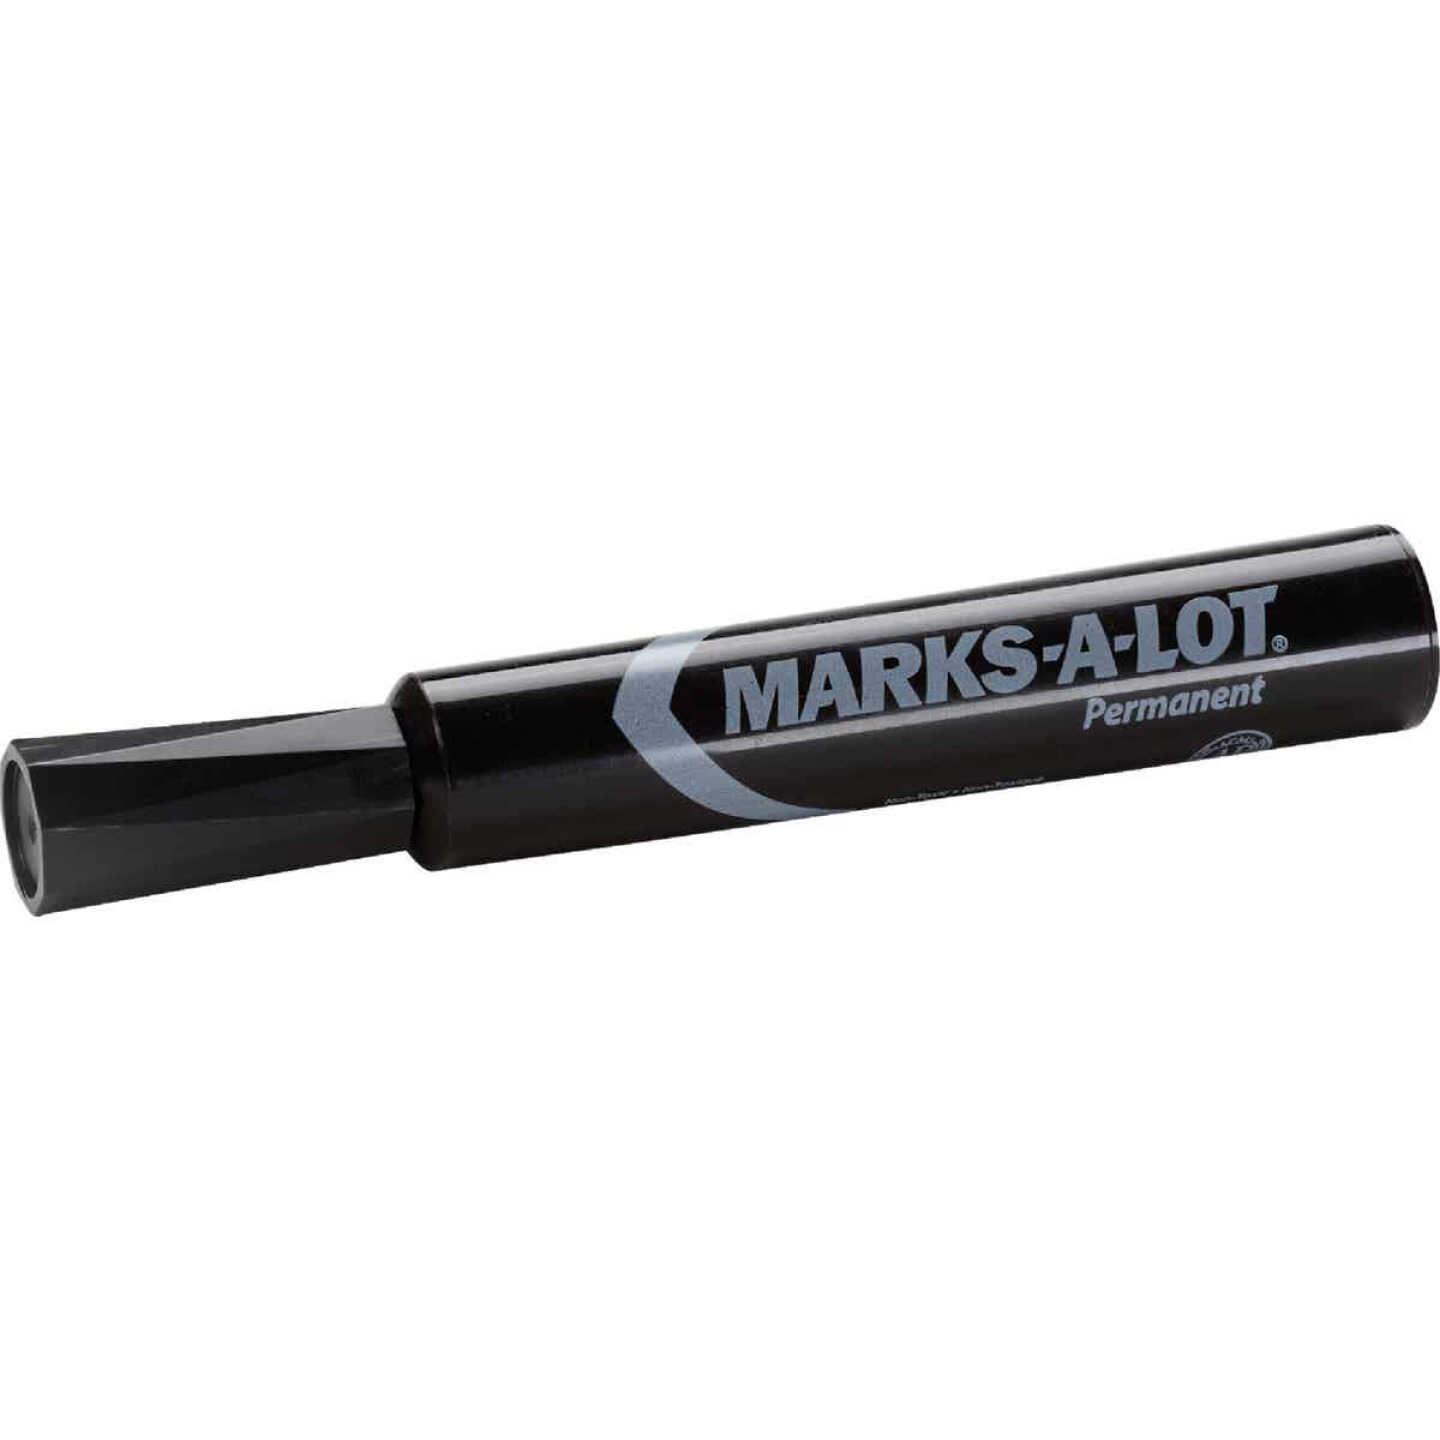 Marks-A-Lot Black Regular Chisel Tip Permanent Marker - Power